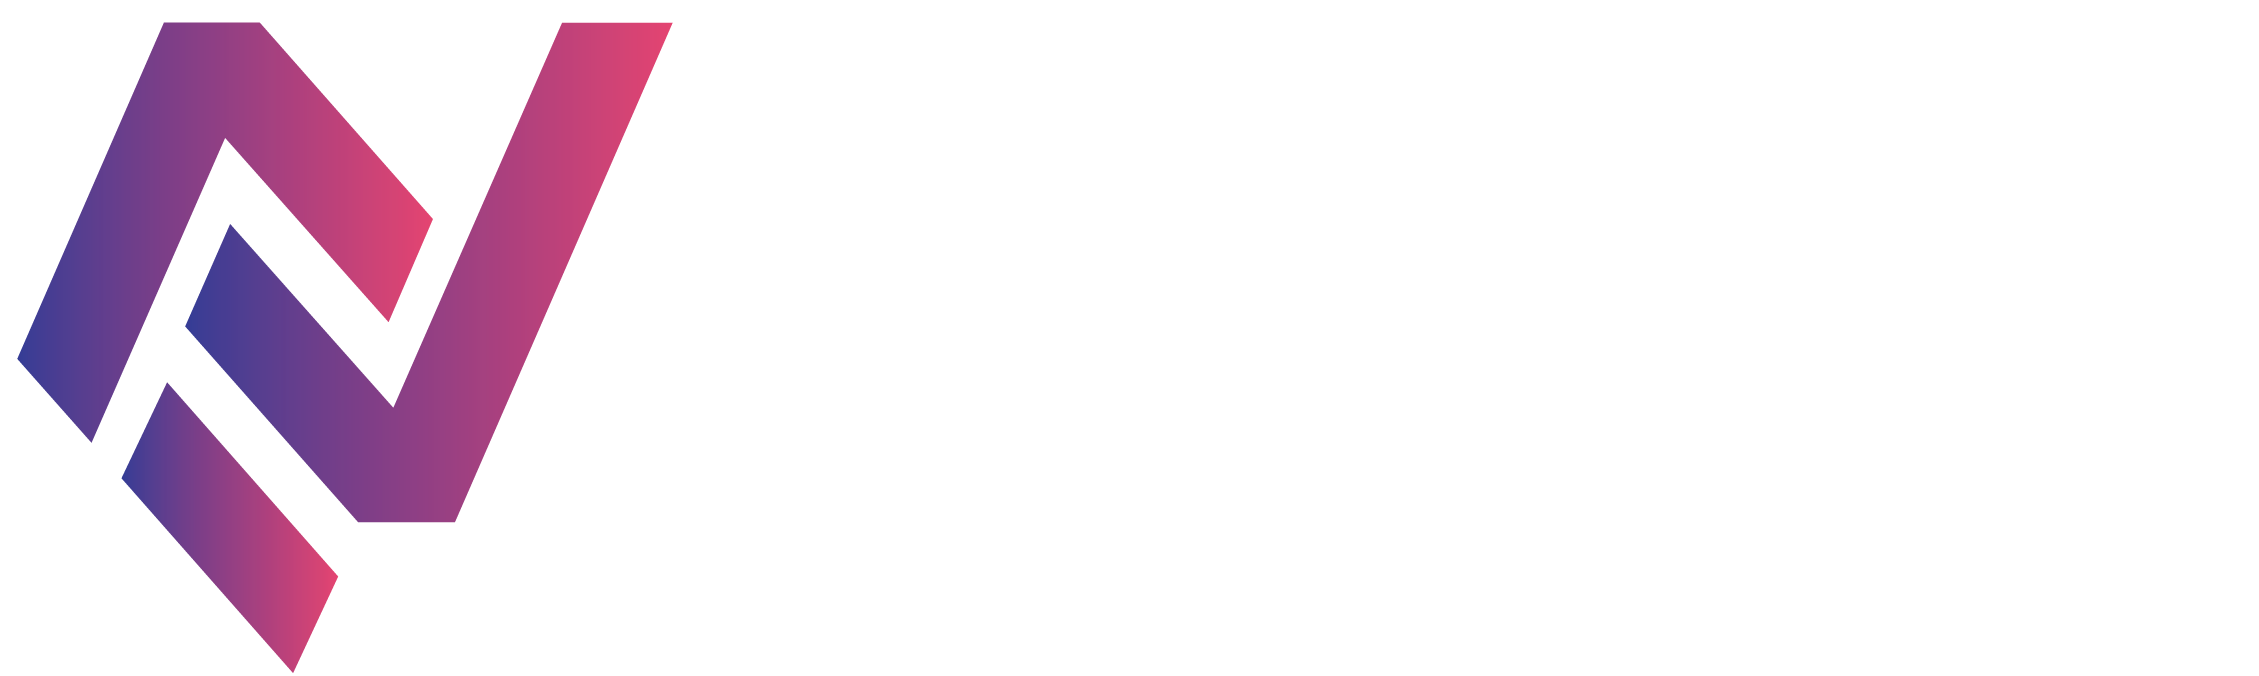 Elma nova logo - white text